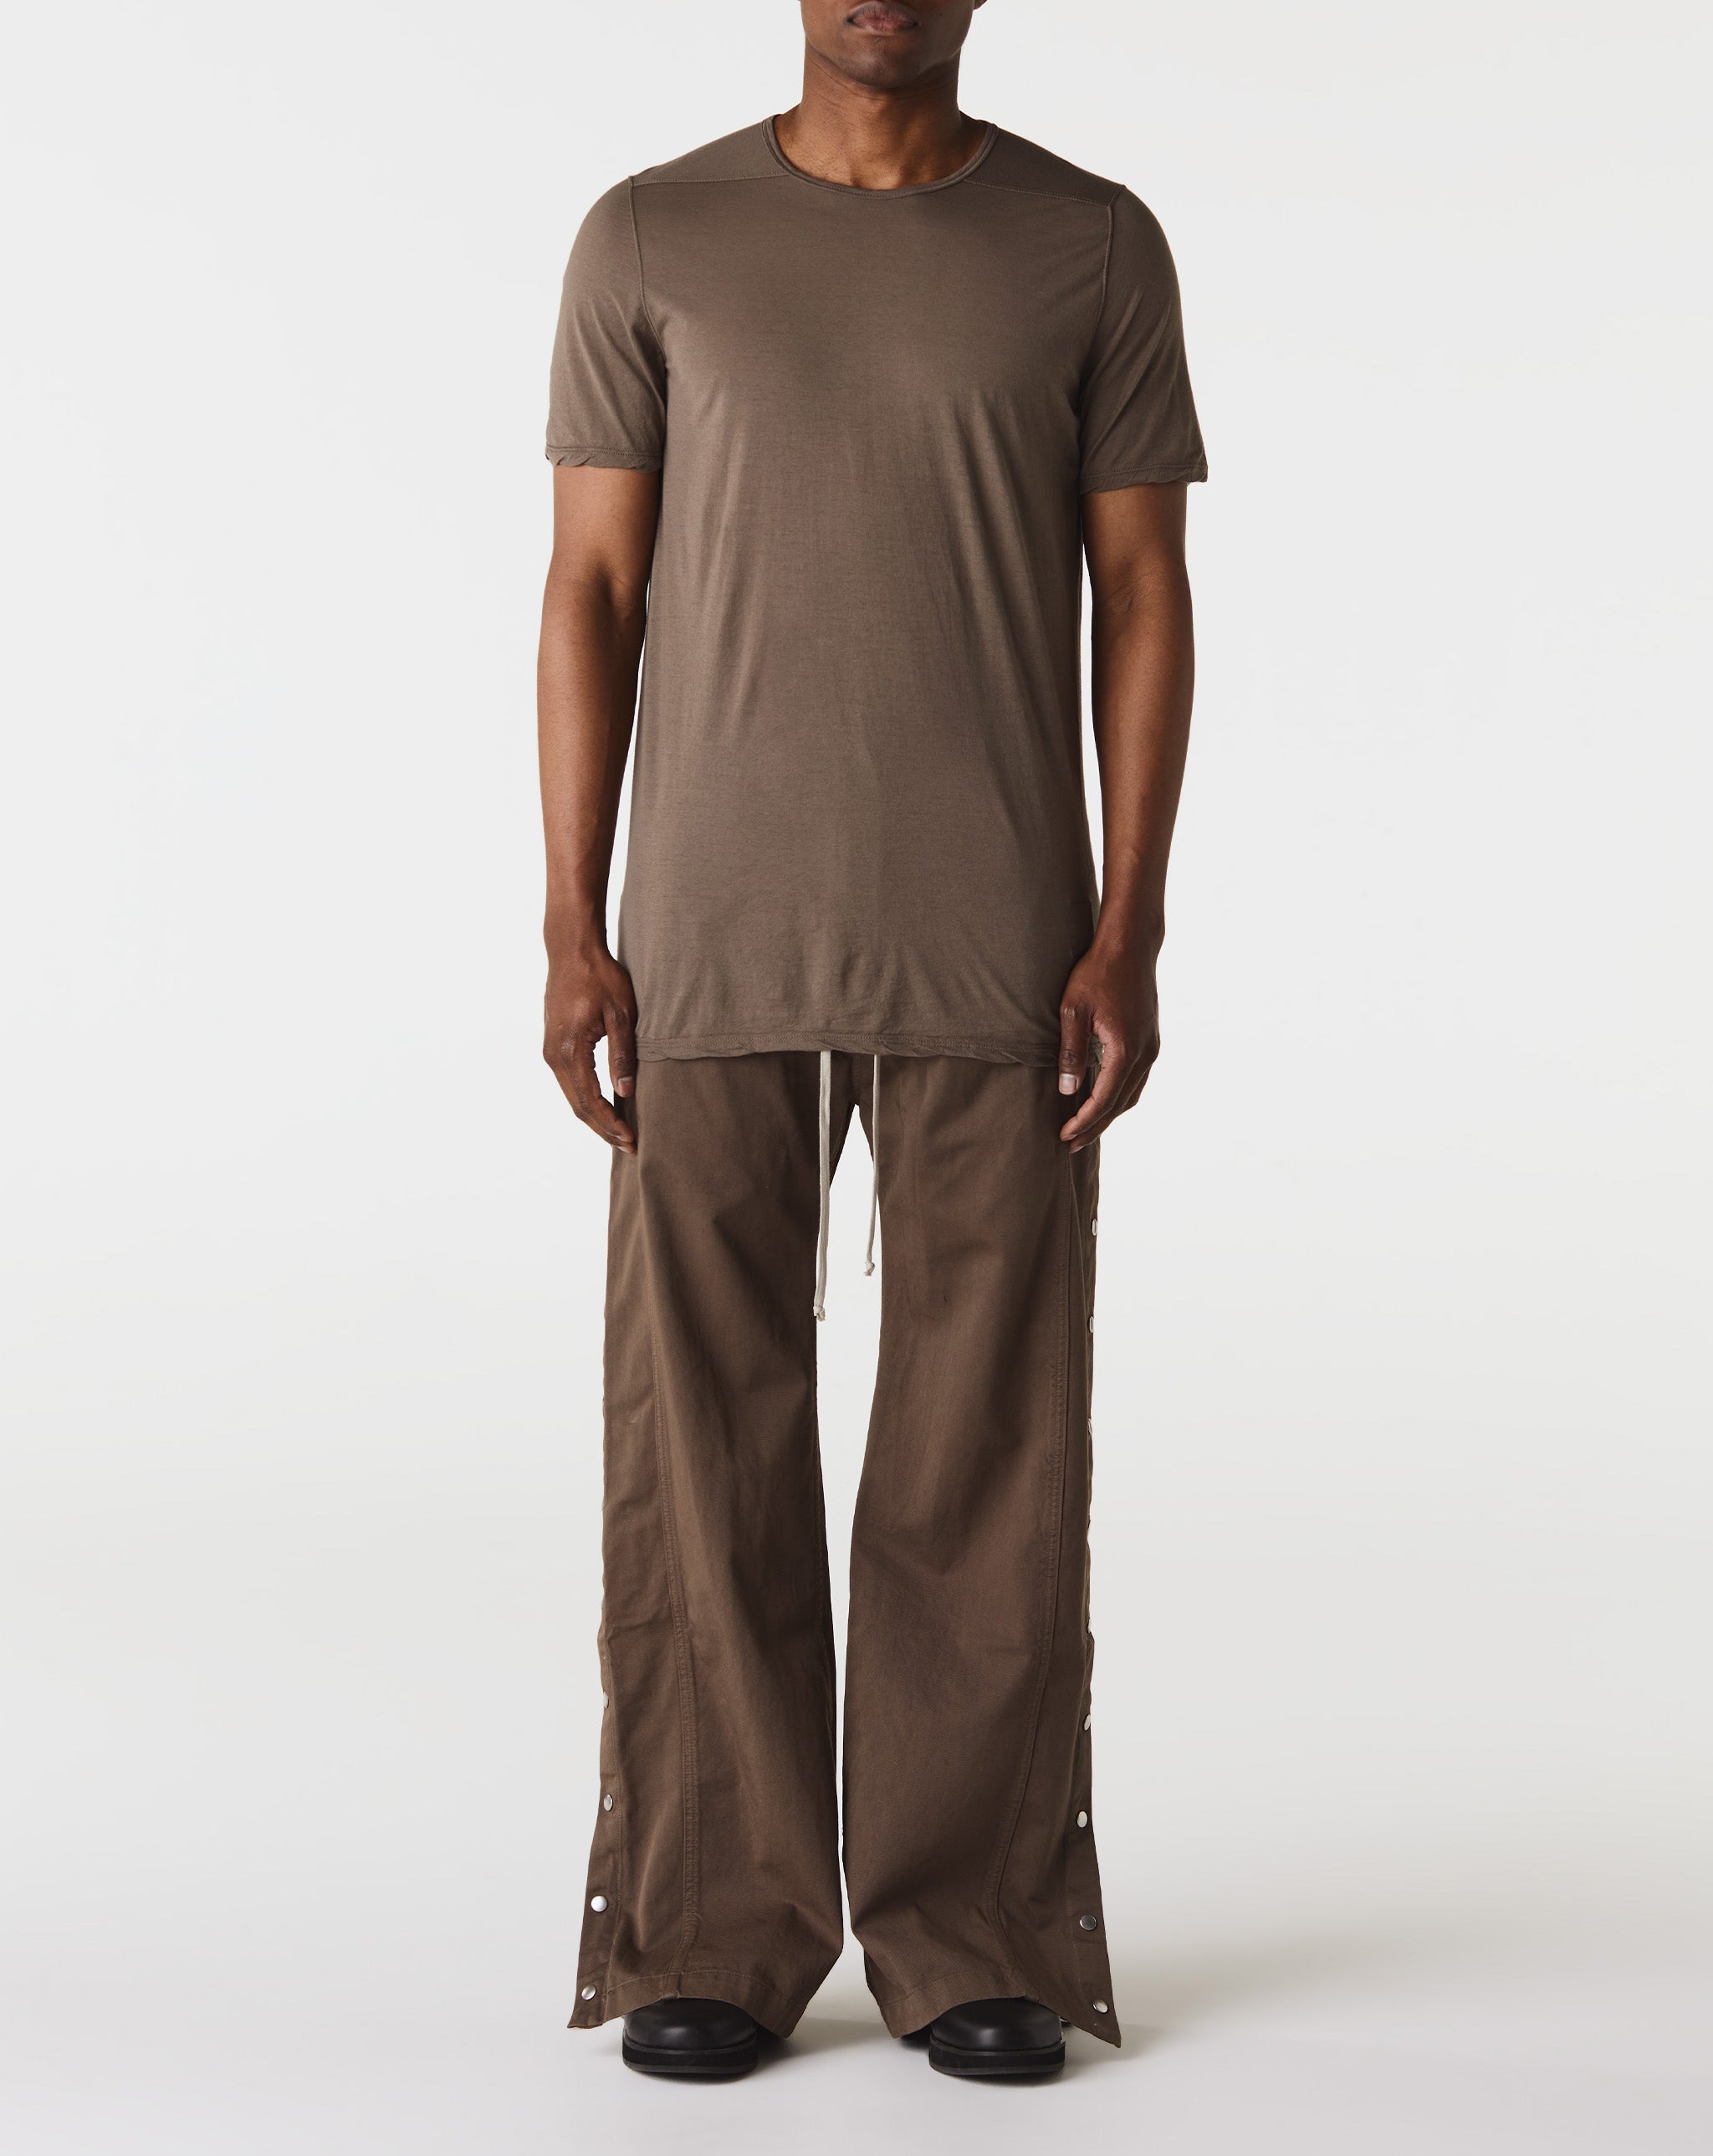 Camo Painter Pants Level T-Shirt  - Cheap 127-0 Jordan outlet